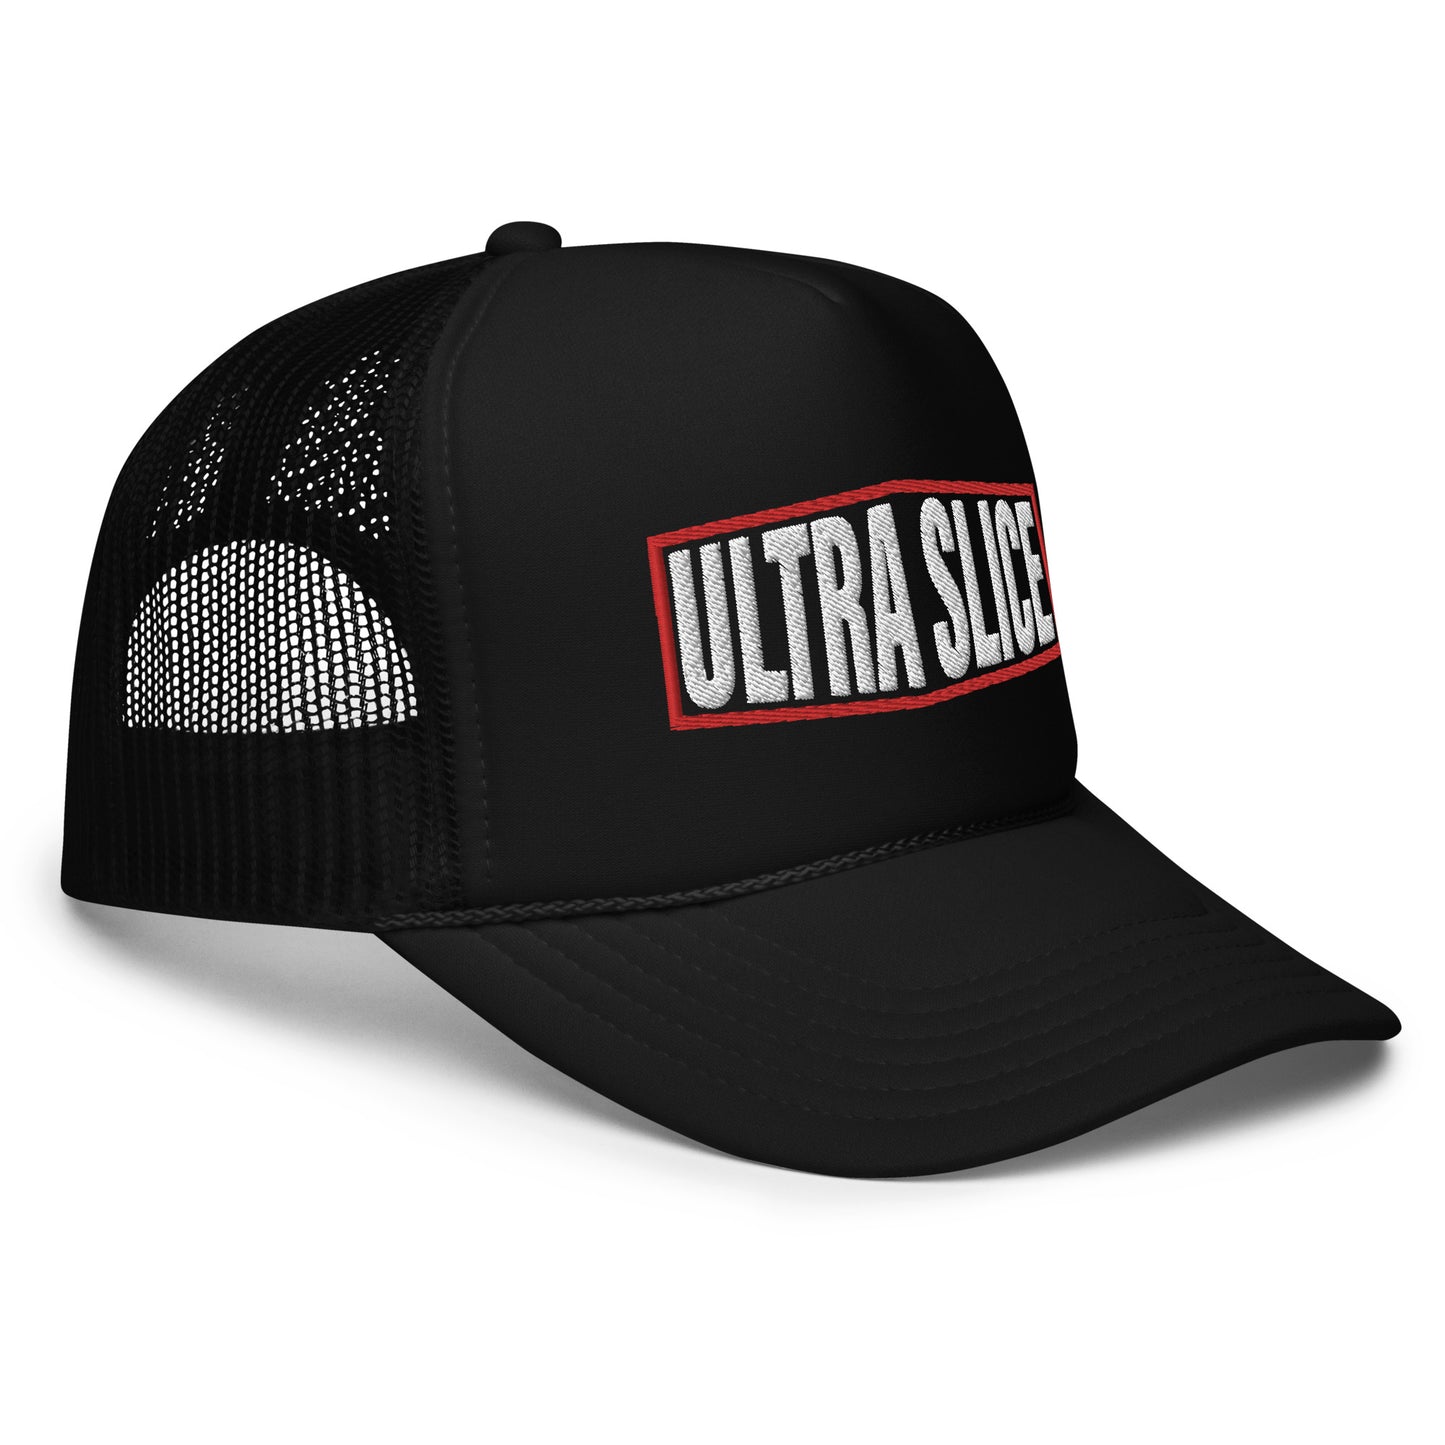 Ultra Slice - Mechanic's Foam Trucker Hat